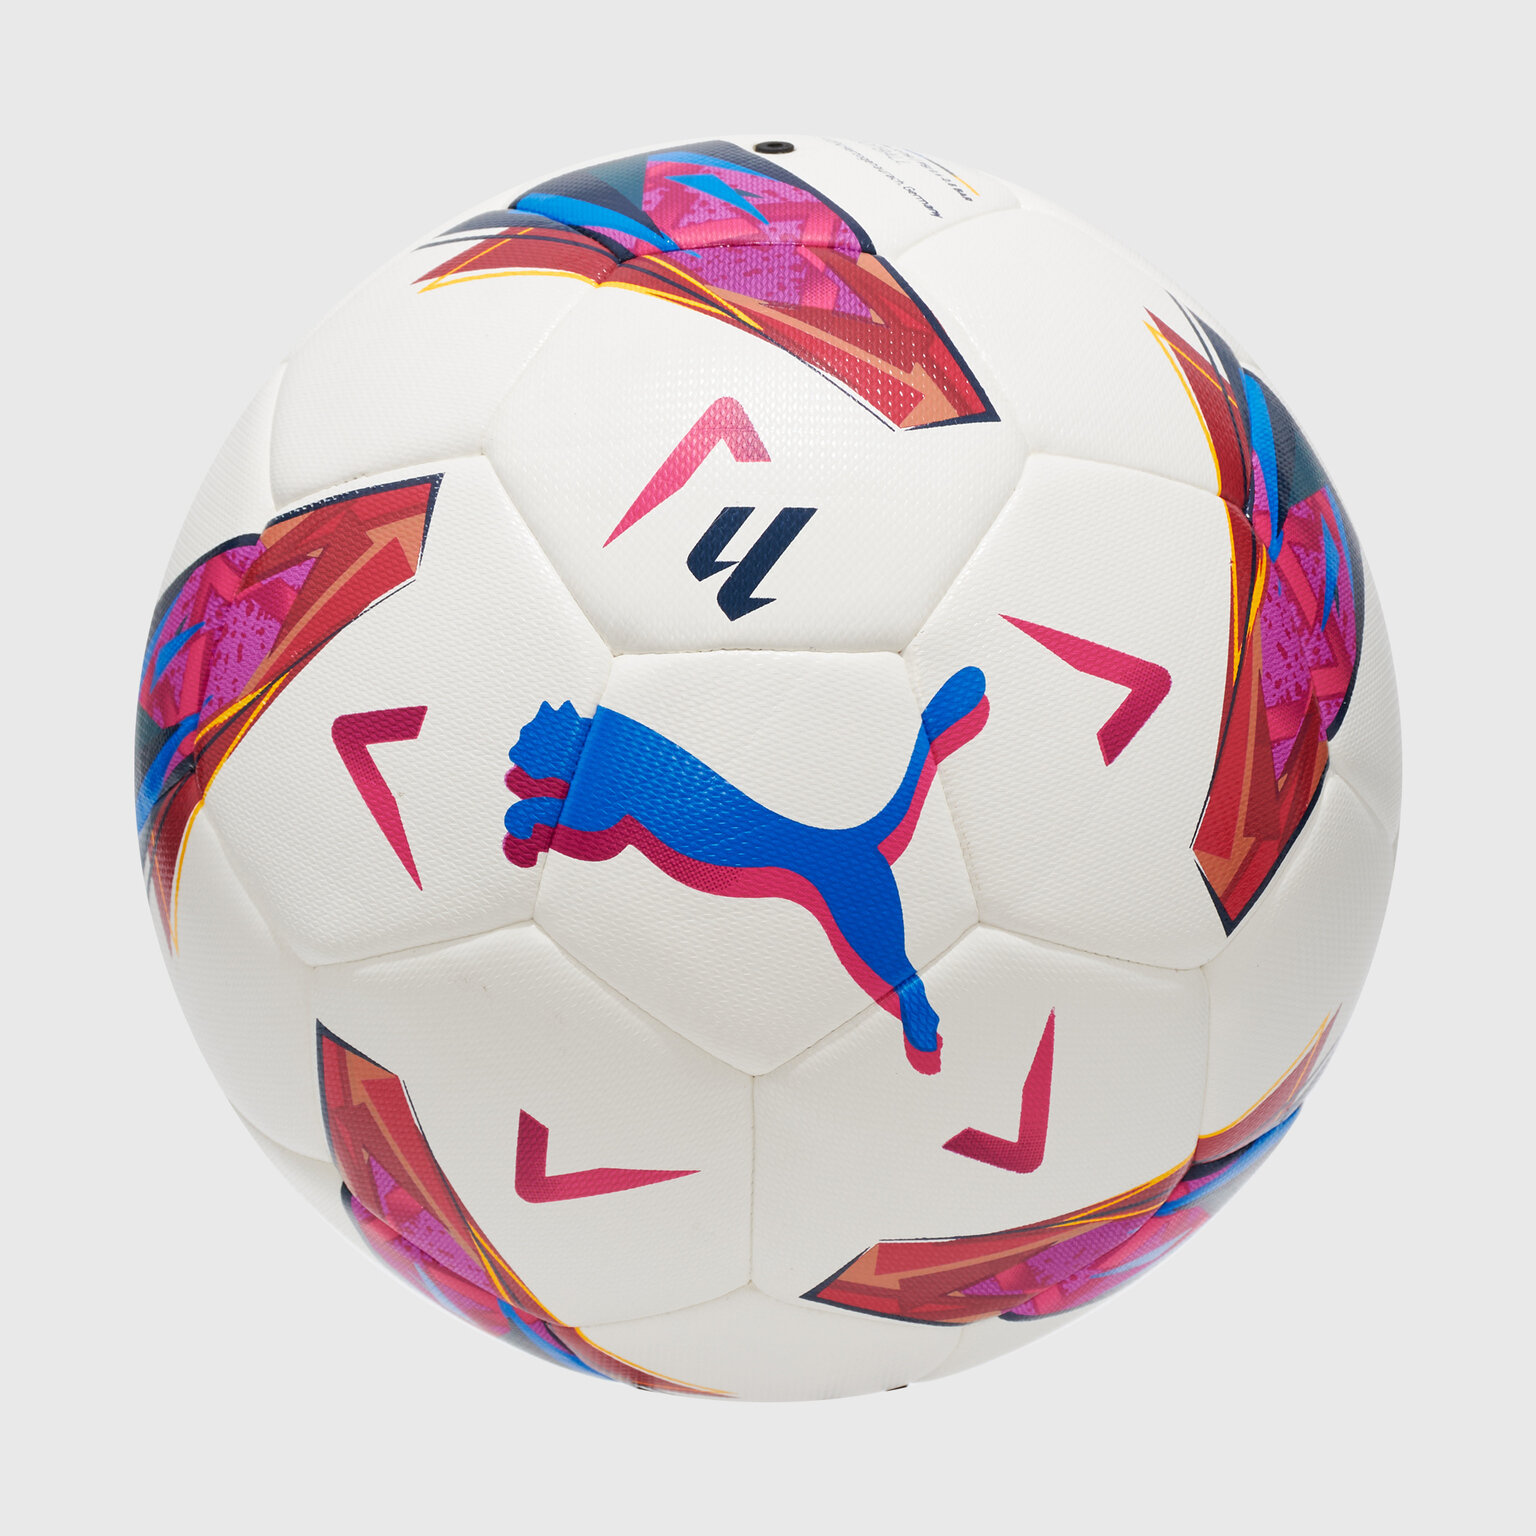 Футбольный мяч Puma Orbita Laliga 1 08410801, размер 5, Белый